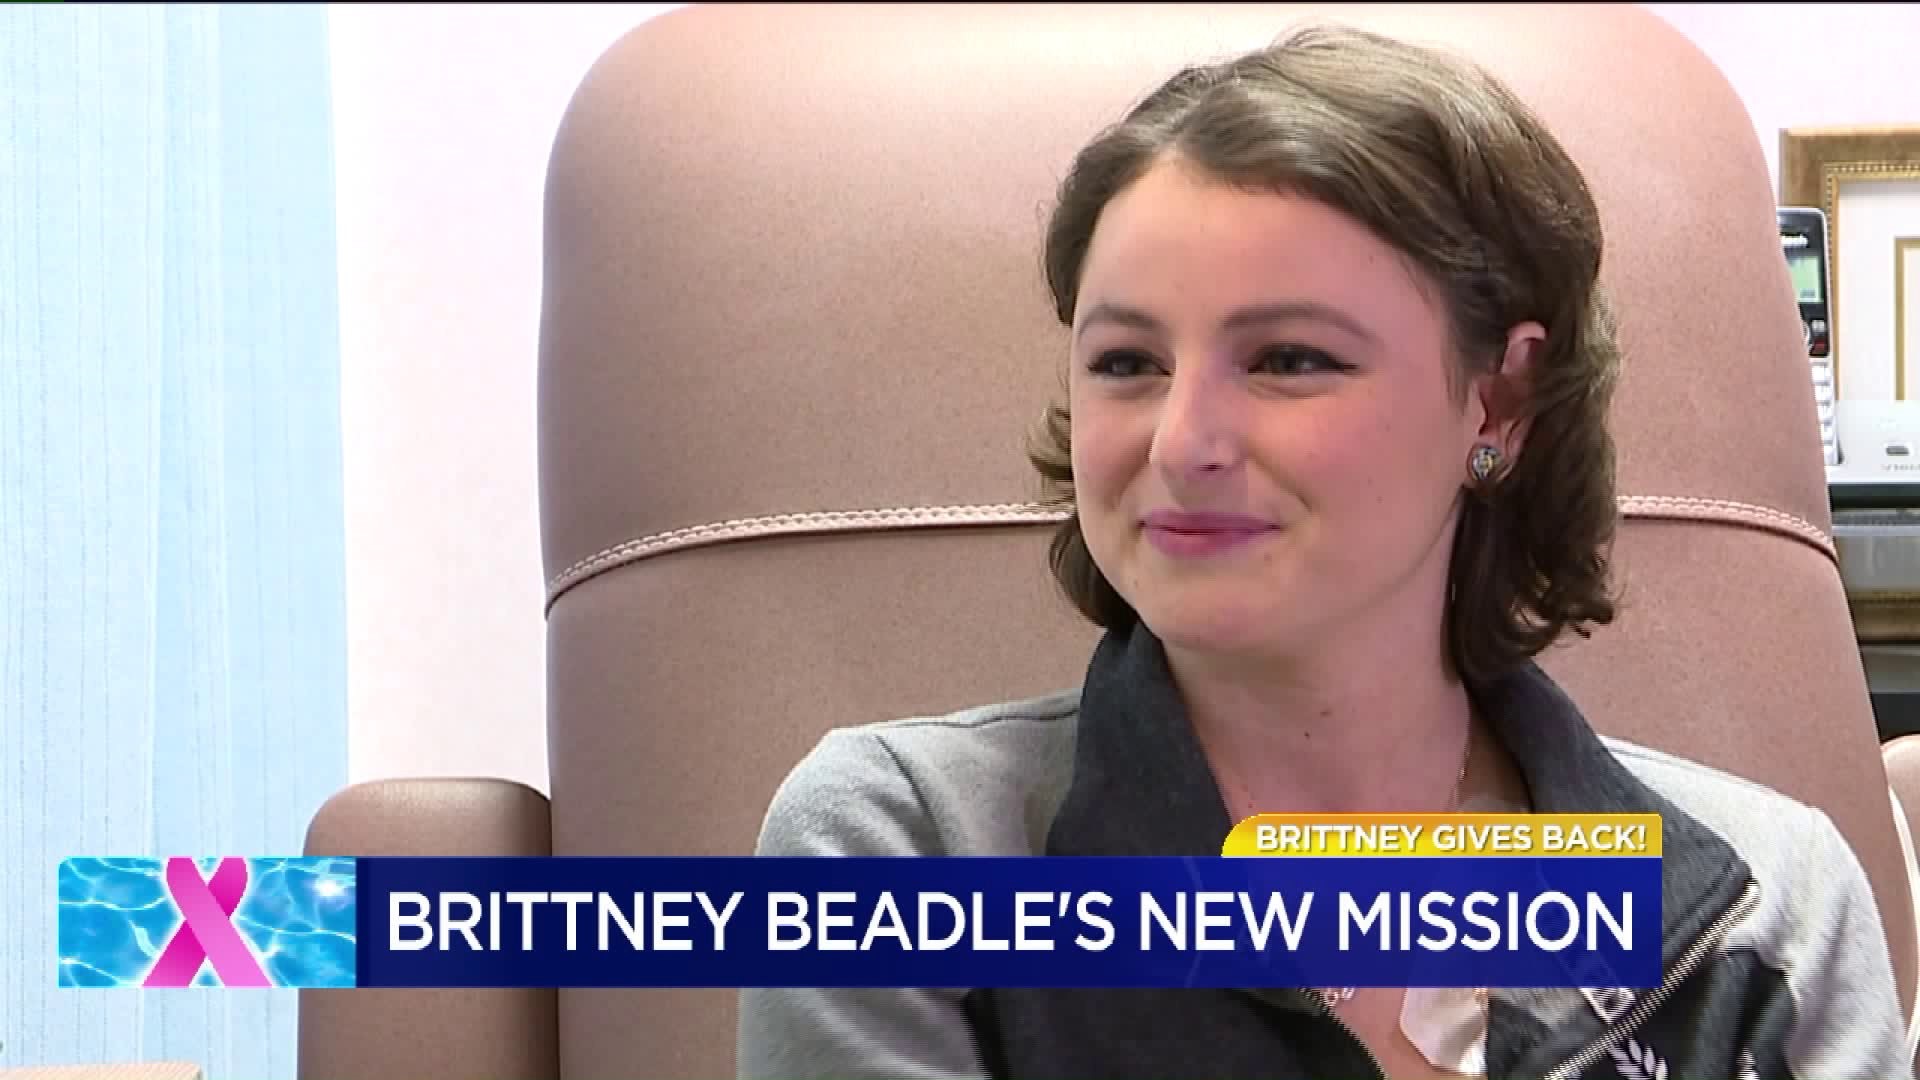 Splash 4 Life: Brittney Beadle Gives Back!